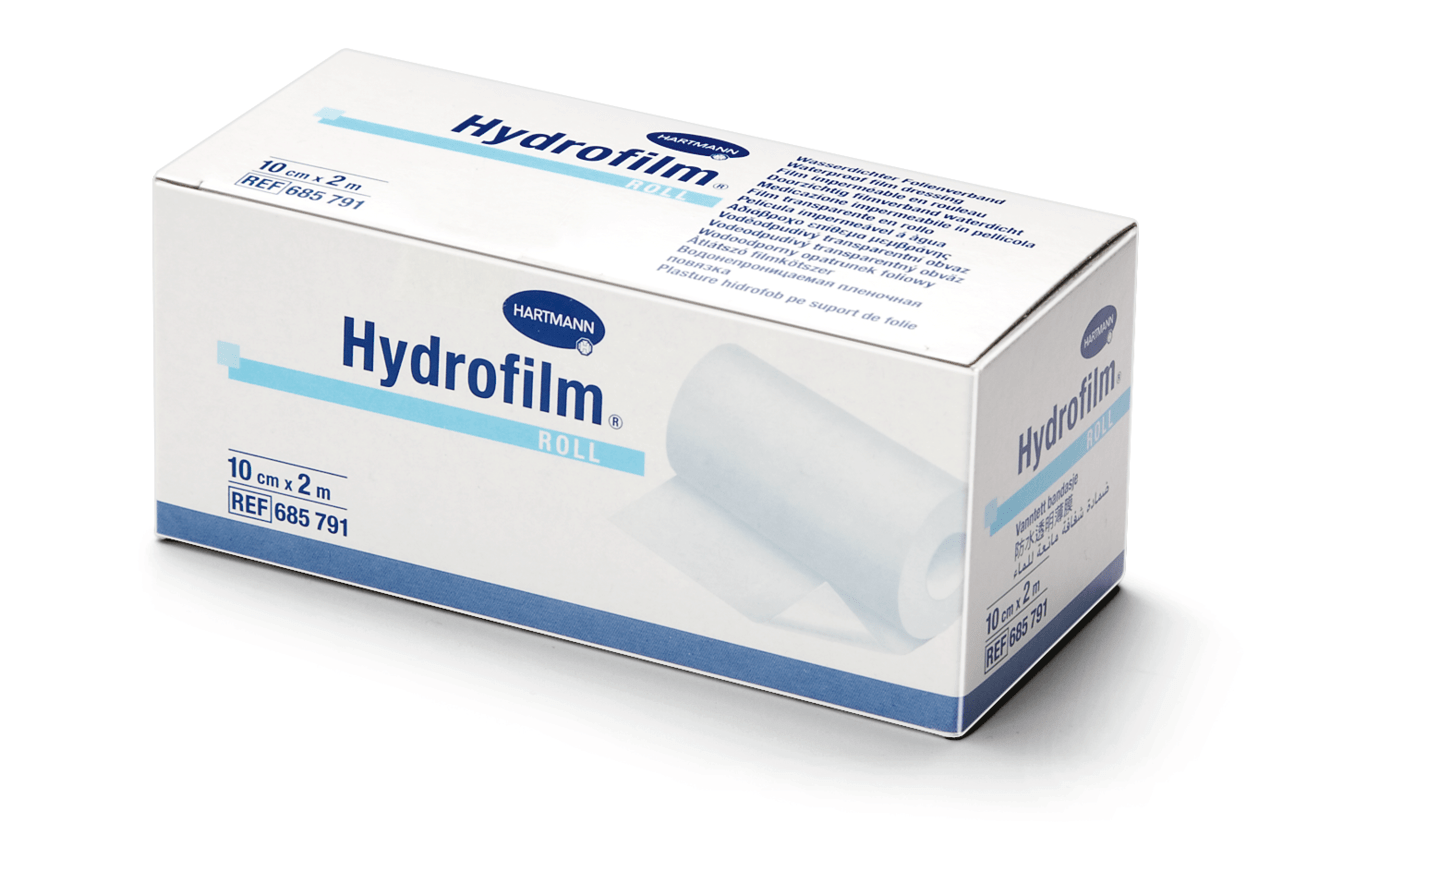 Hydrofilm - Folienverband